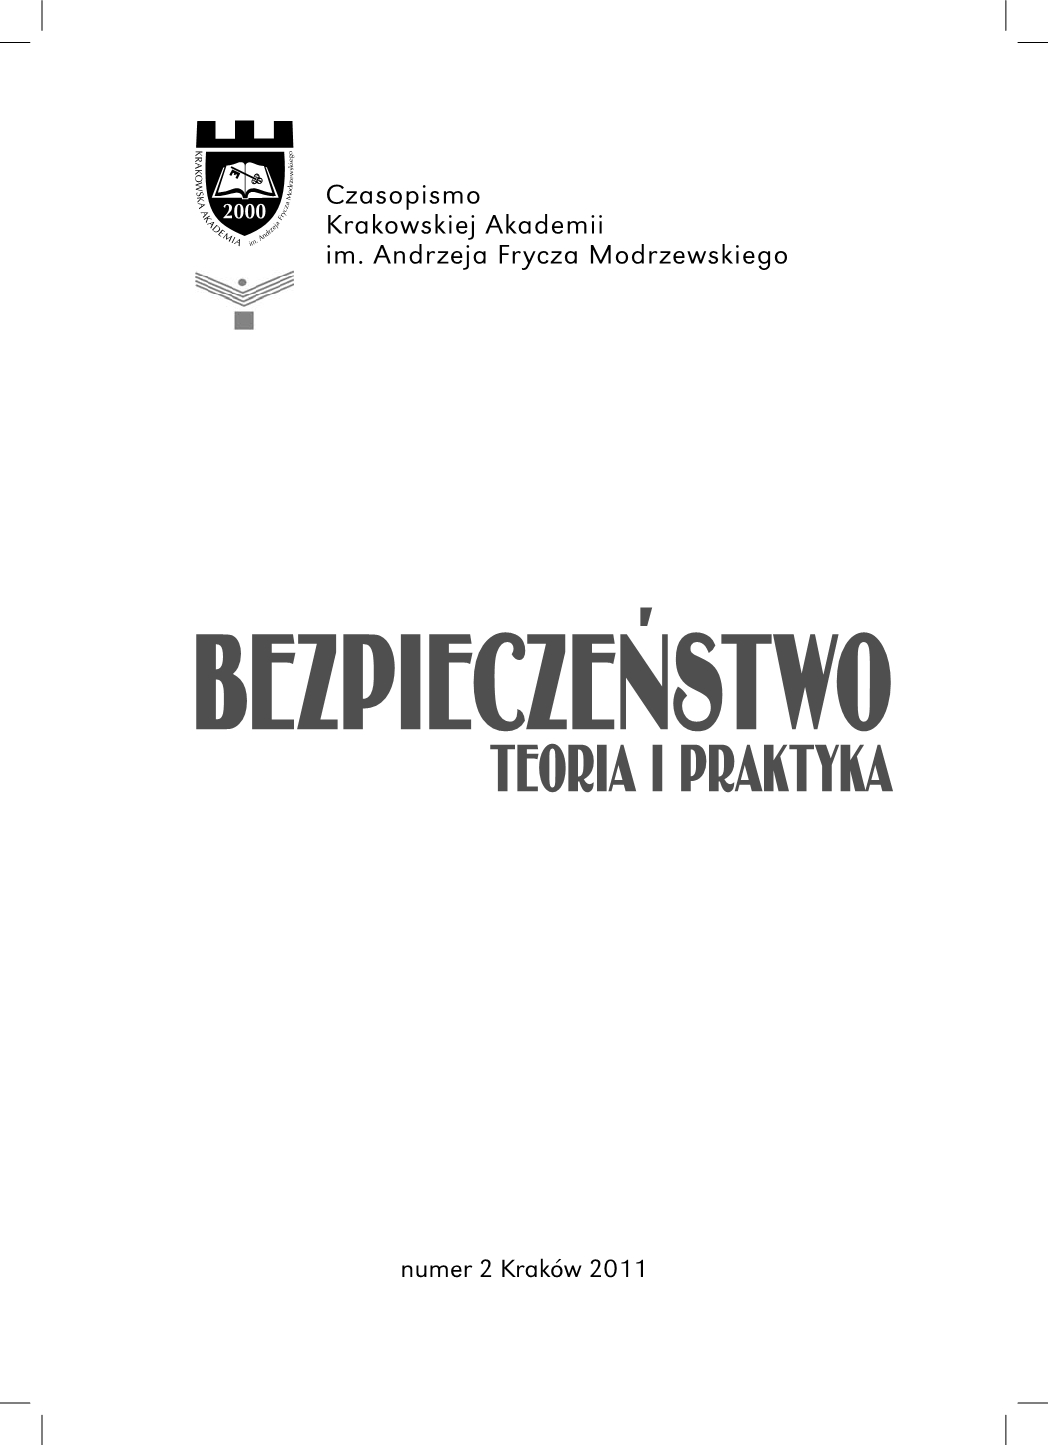 Polskie służby specjalne. Słownik pod redakcją Konstantego A. Wojtaszczyka - book review Cover Image